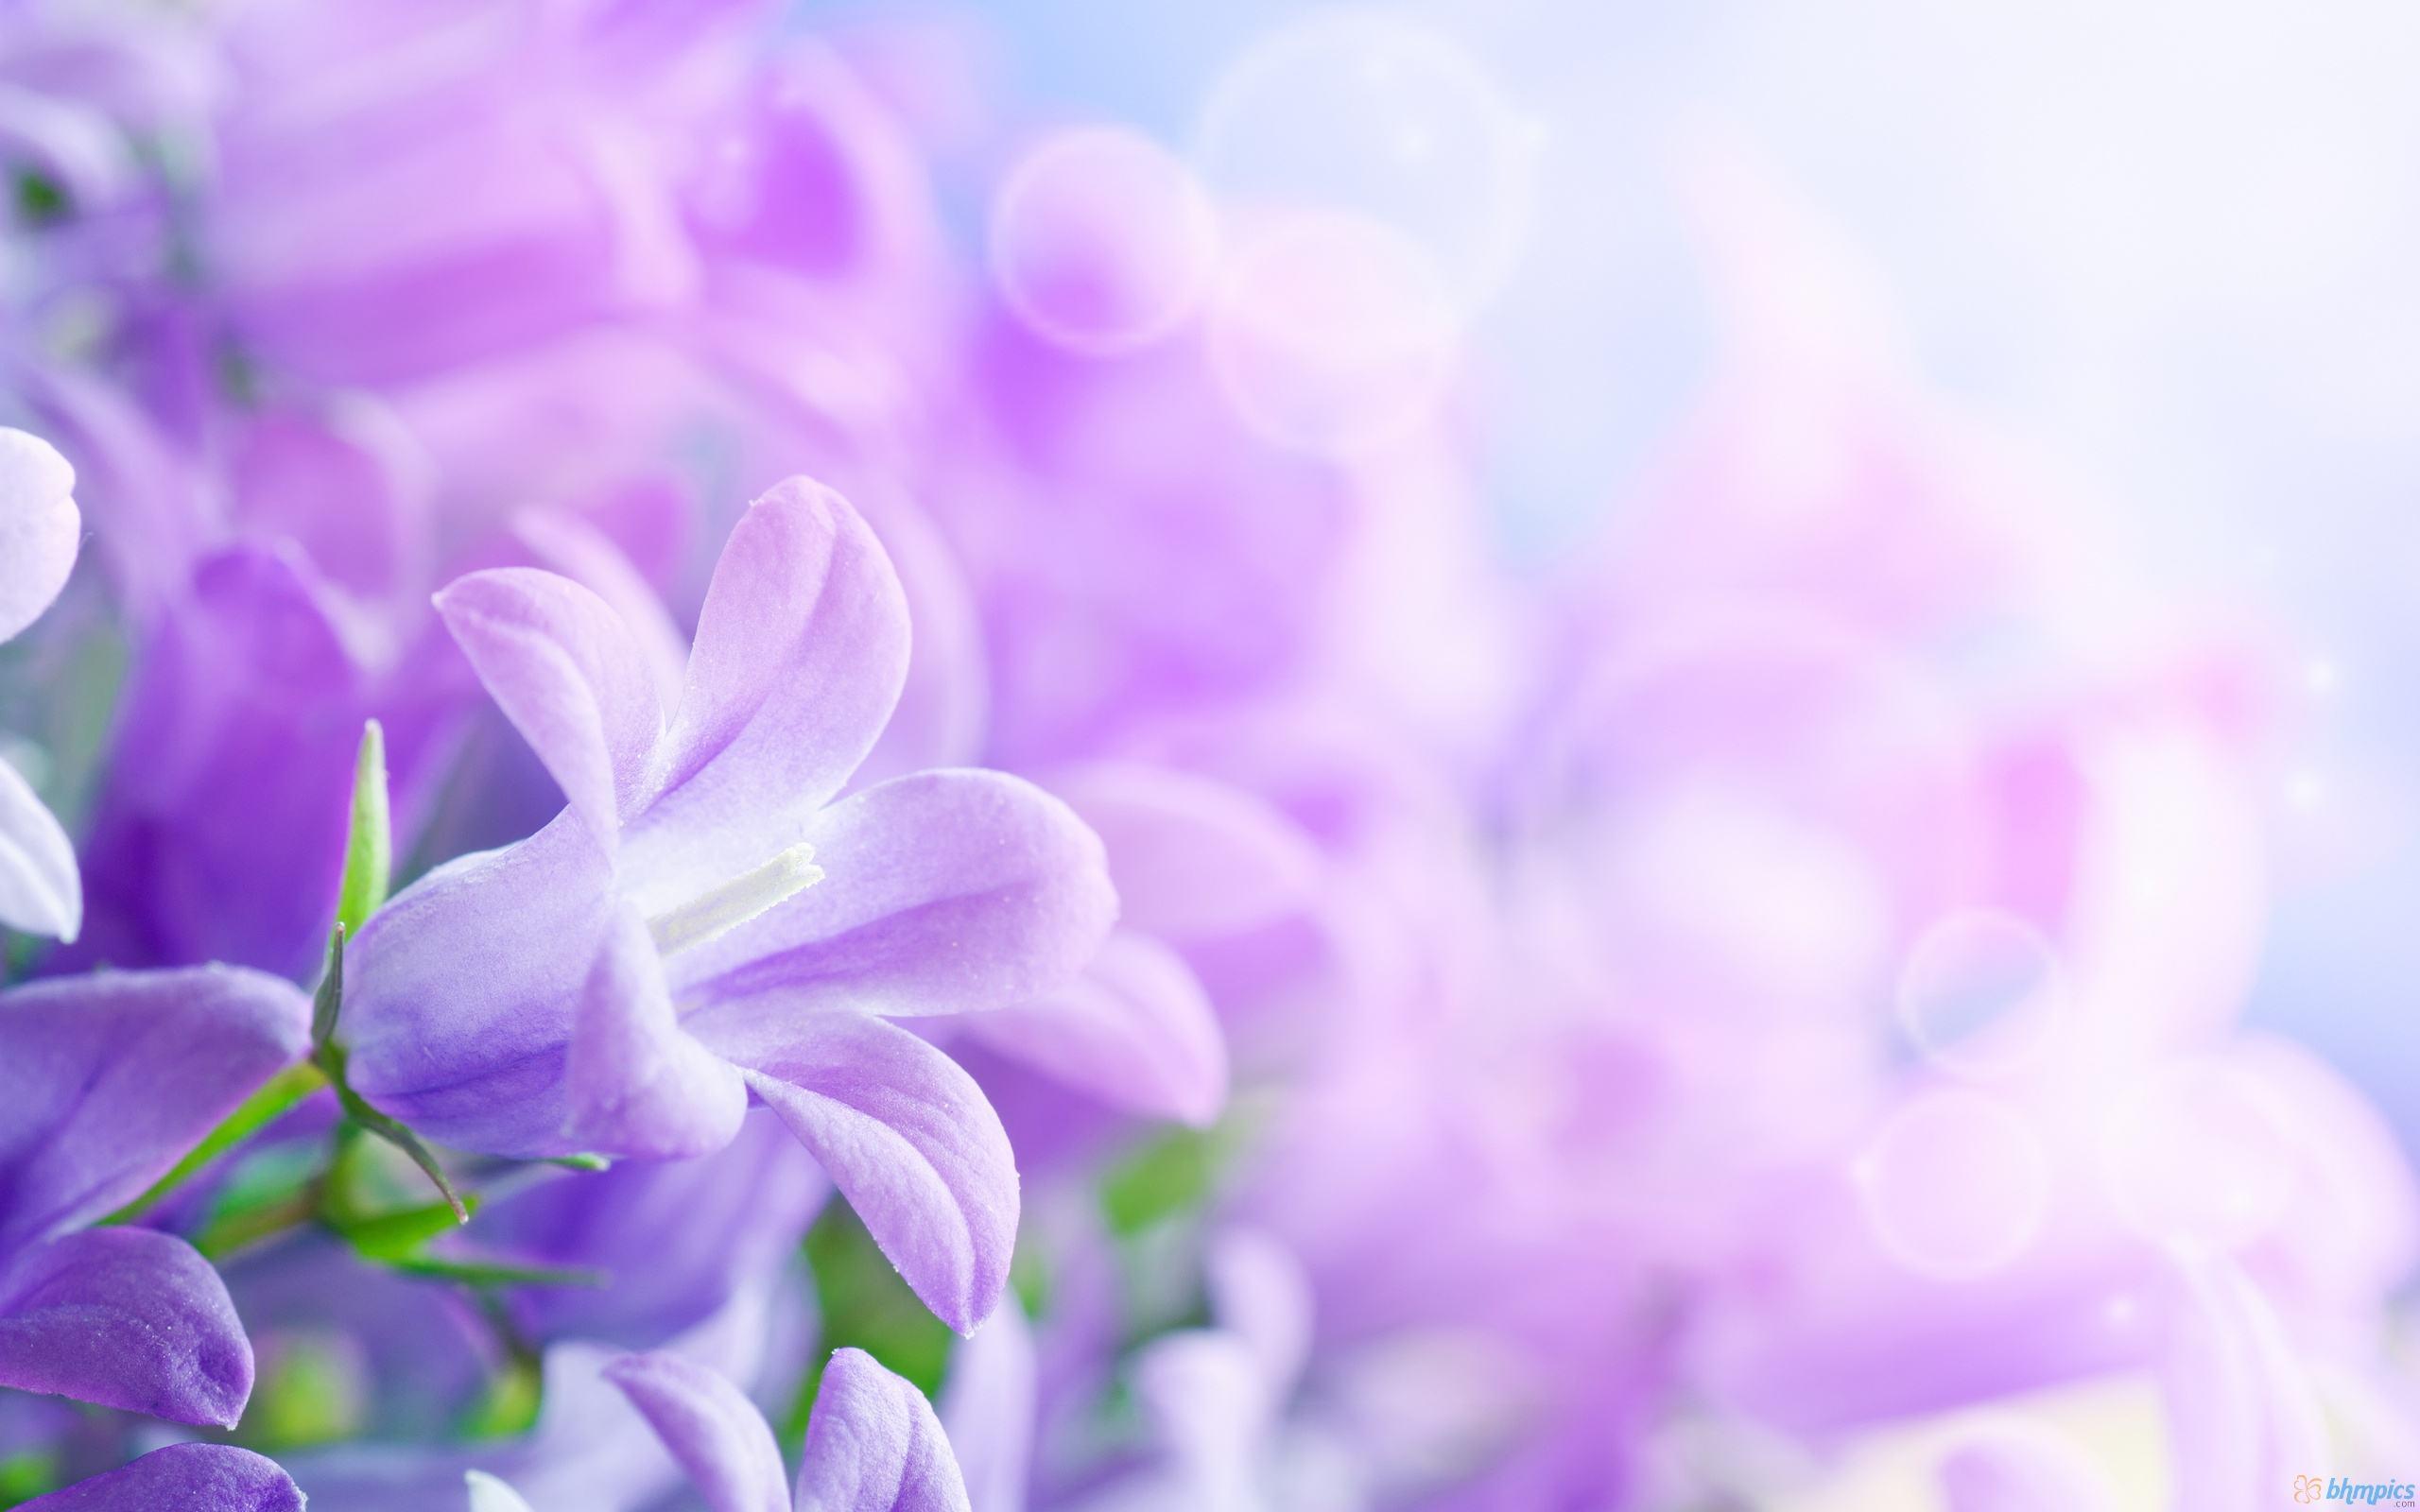 Hình nền hoa tím là sự kết hợp tuyệt đẹp giữa màu tím đầy quyến rũ và họa tiết hoa tinh tế. Với hình nền hoa tím, bạn có thể mang một chút sắc màu vào cuộc sống hàng ngày. Hãy xem hình nền hoa tím để tìm kiếm sự lãng mạn và đầy sức sống!